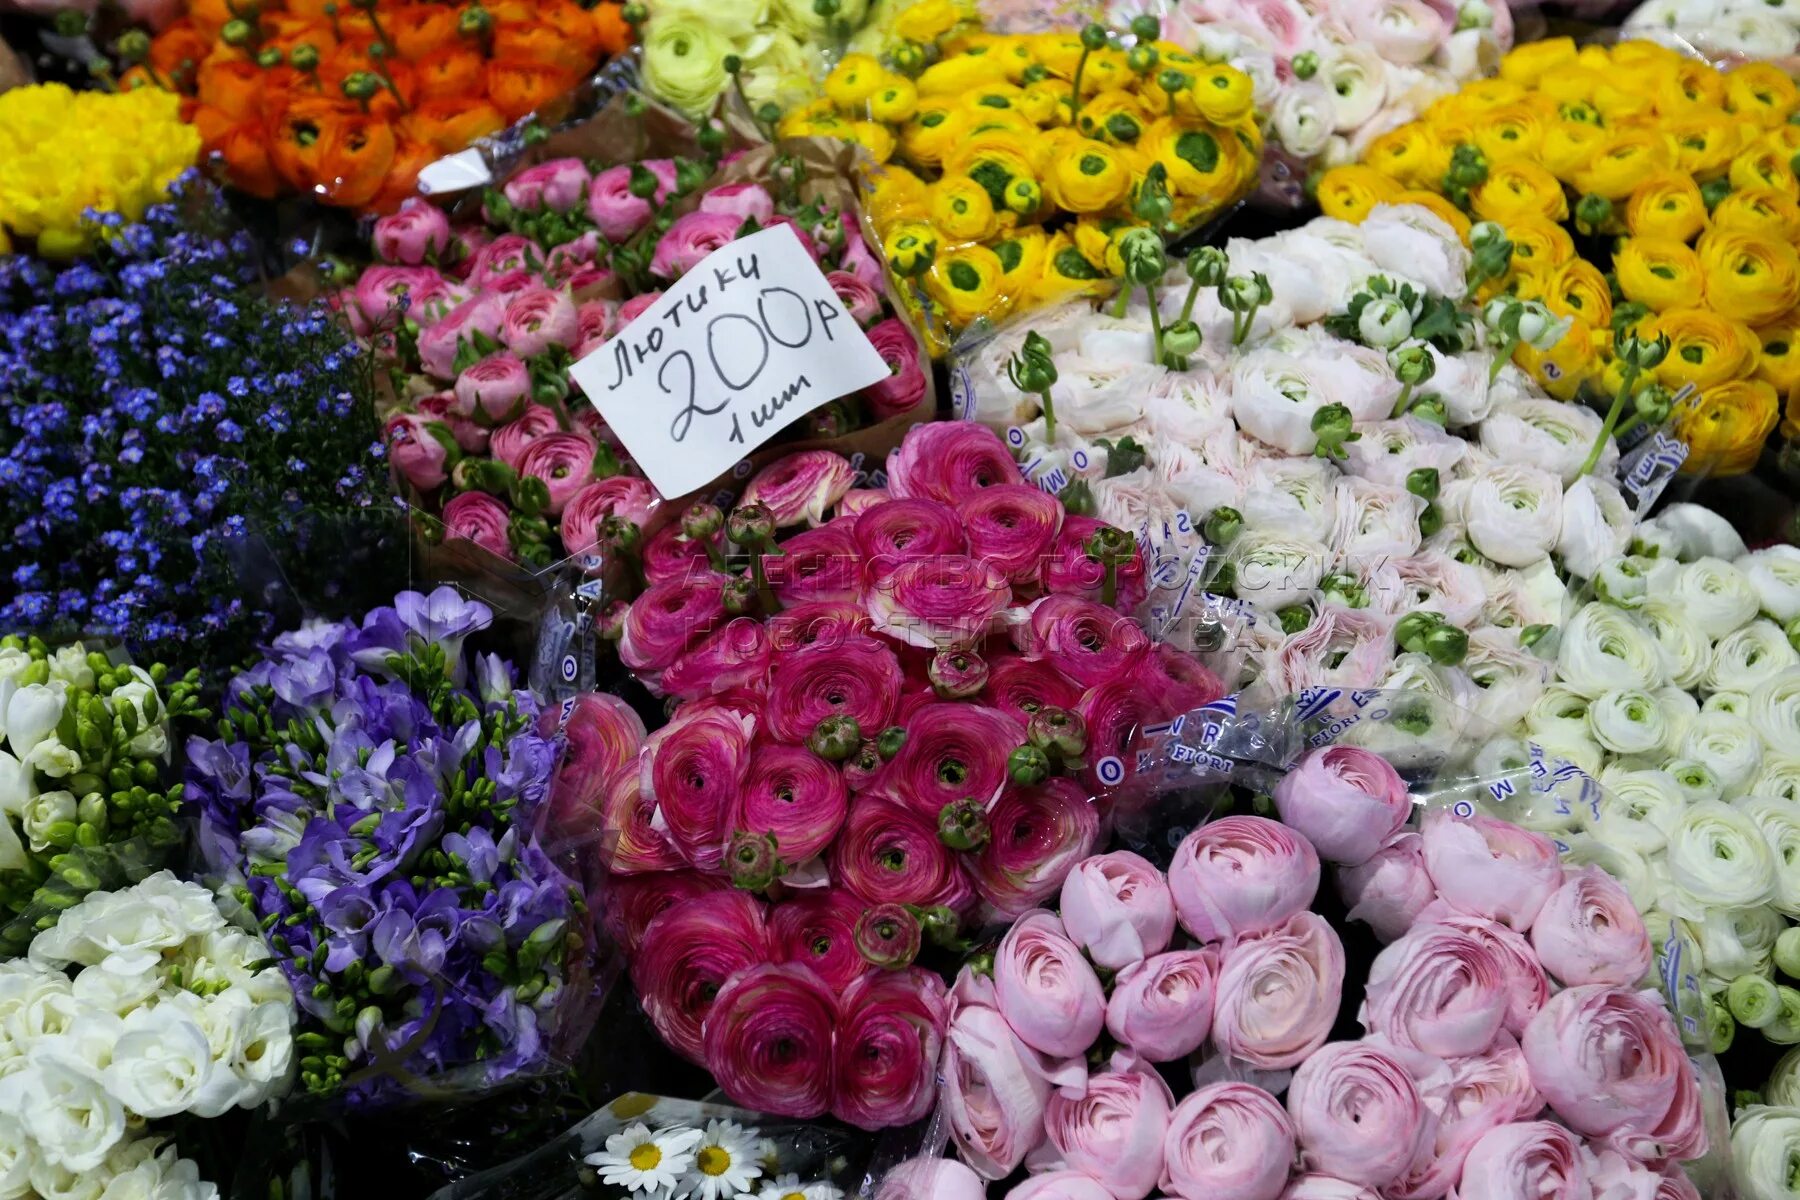 Где купить цветы в москве в розницу. Рижский вокзал Цветочная база. Рижский рынок цветы. Рижский рынок цветов пионы. Пионы на Рижском рынке.